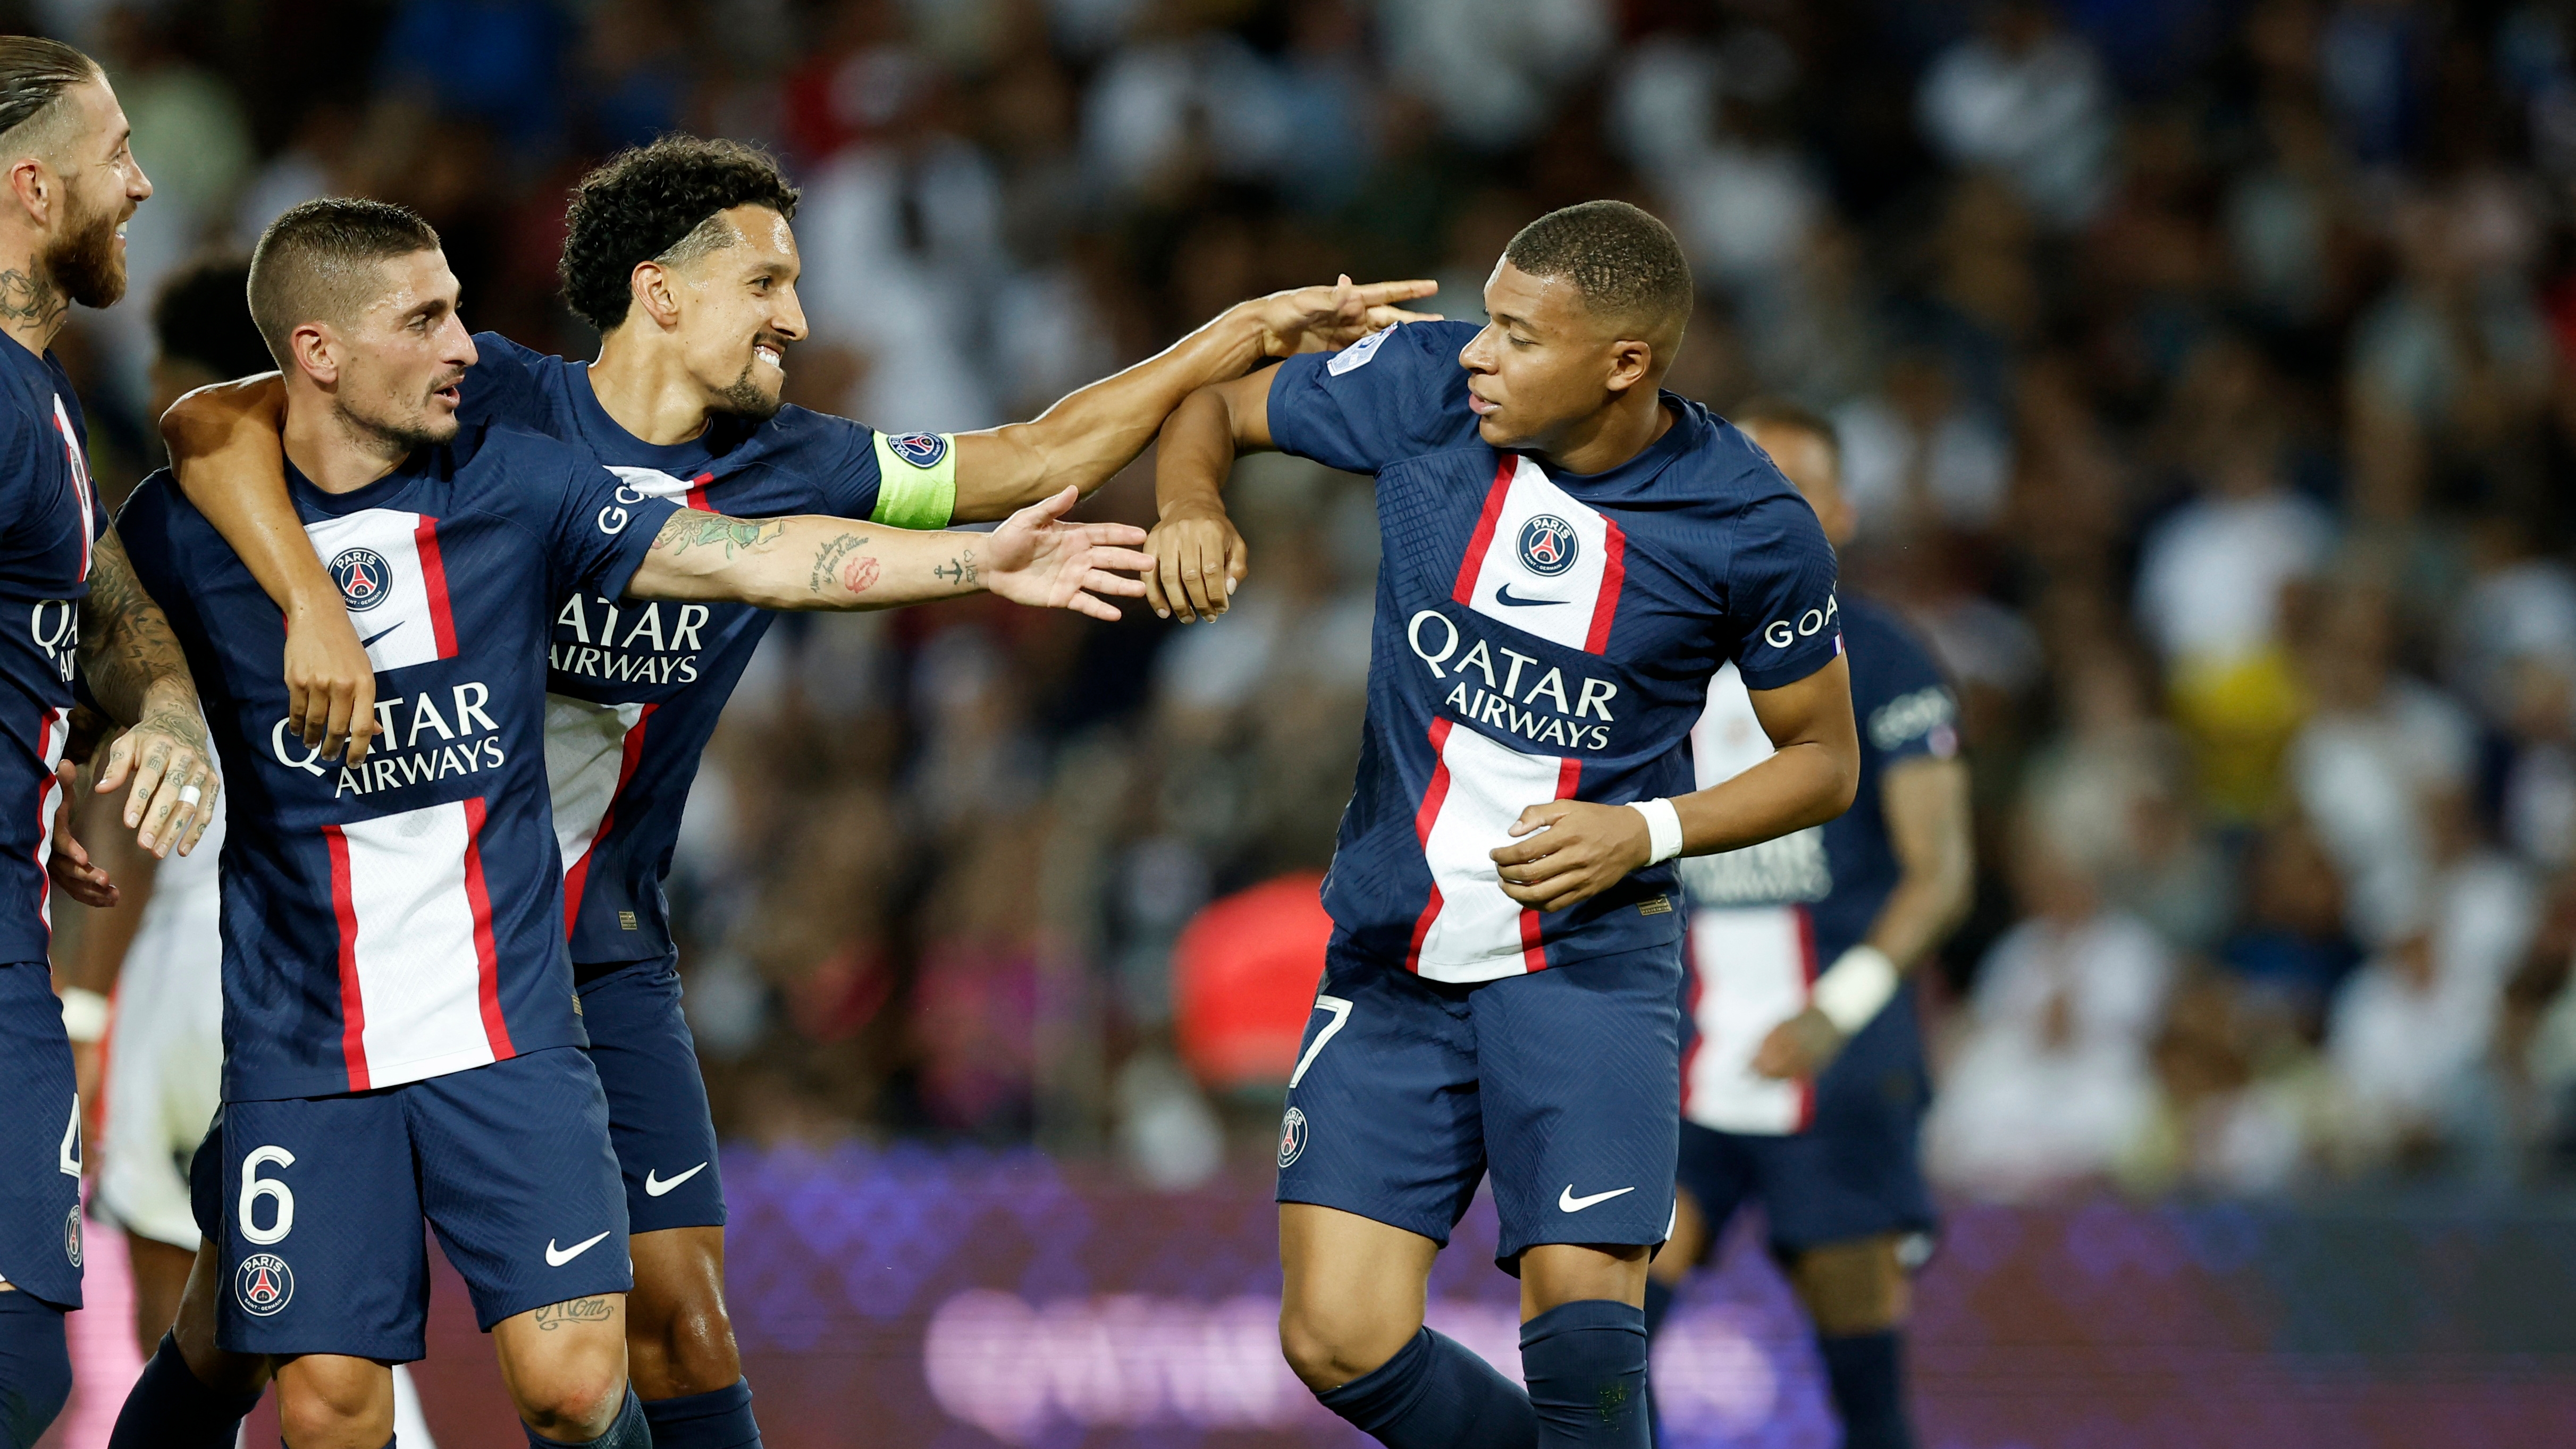 Ligue 1 - Paris St Germain v Montpellier